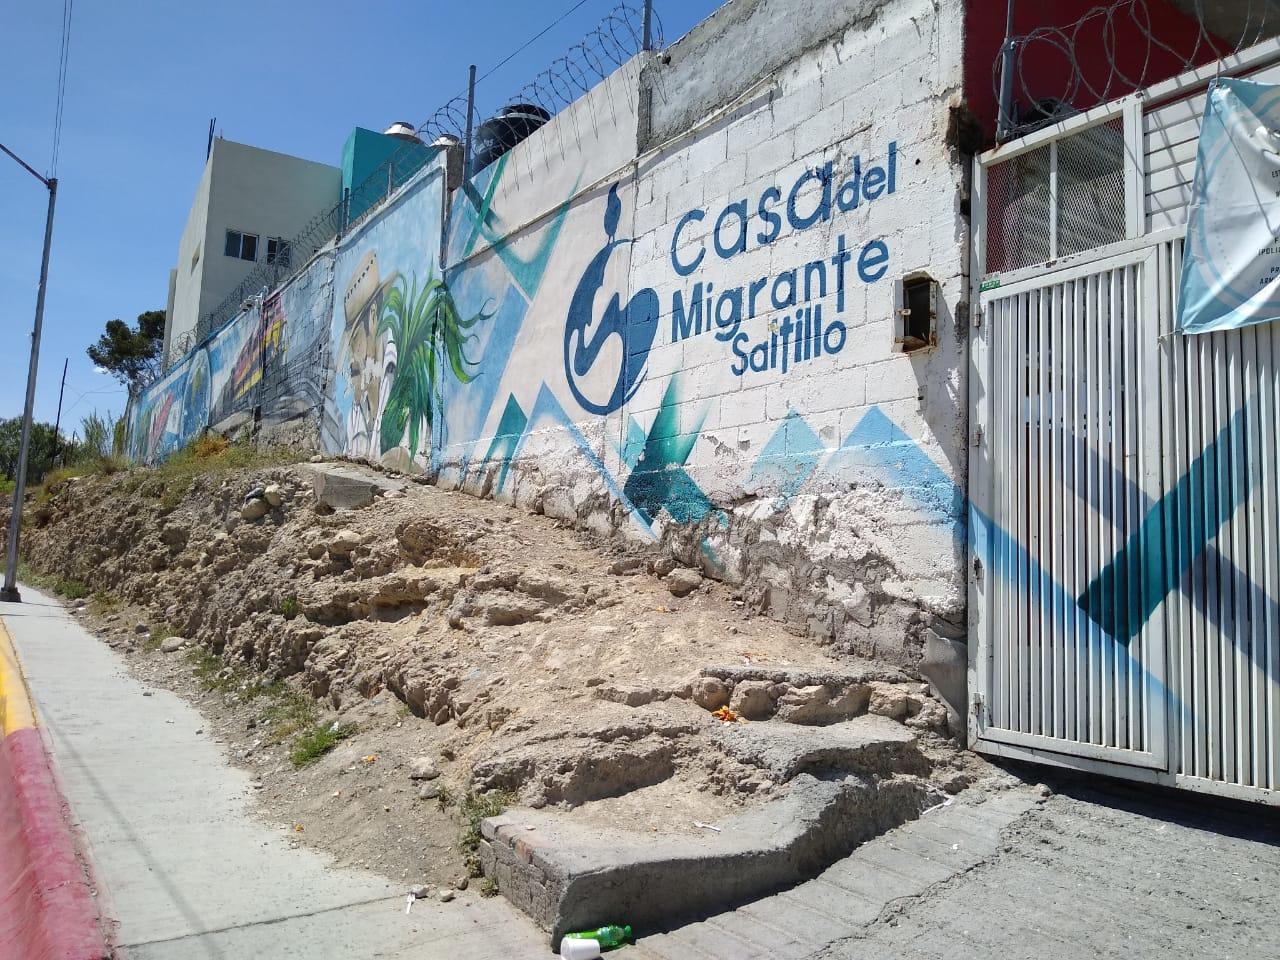 De seguir adelante, caravana de migrantes, arribará a Coahuila: Casa del Migrante